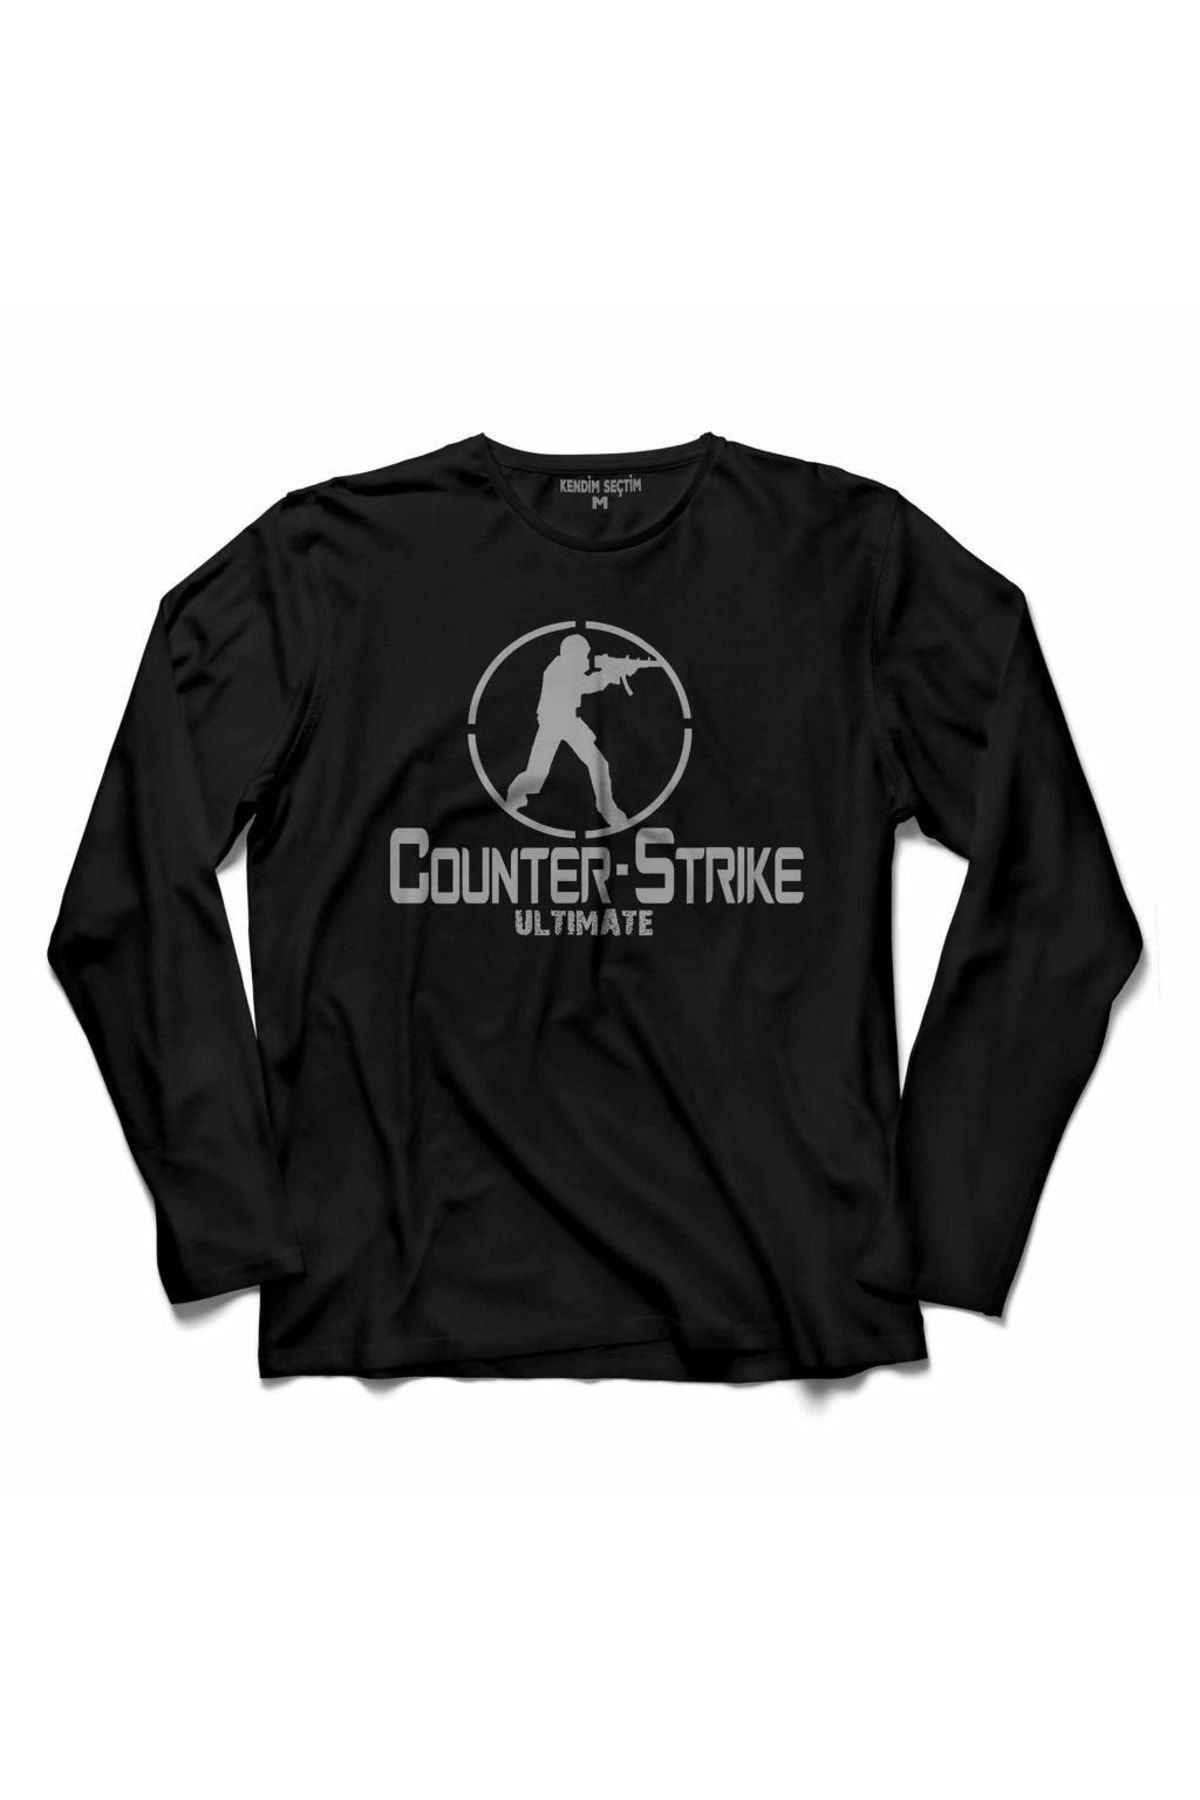 Kendim Seçtim Counter Strıke Cs Go Ultımate Gamer Oyuncu Uzun Kollu Tişört Baskılı Çocuk T-shirt